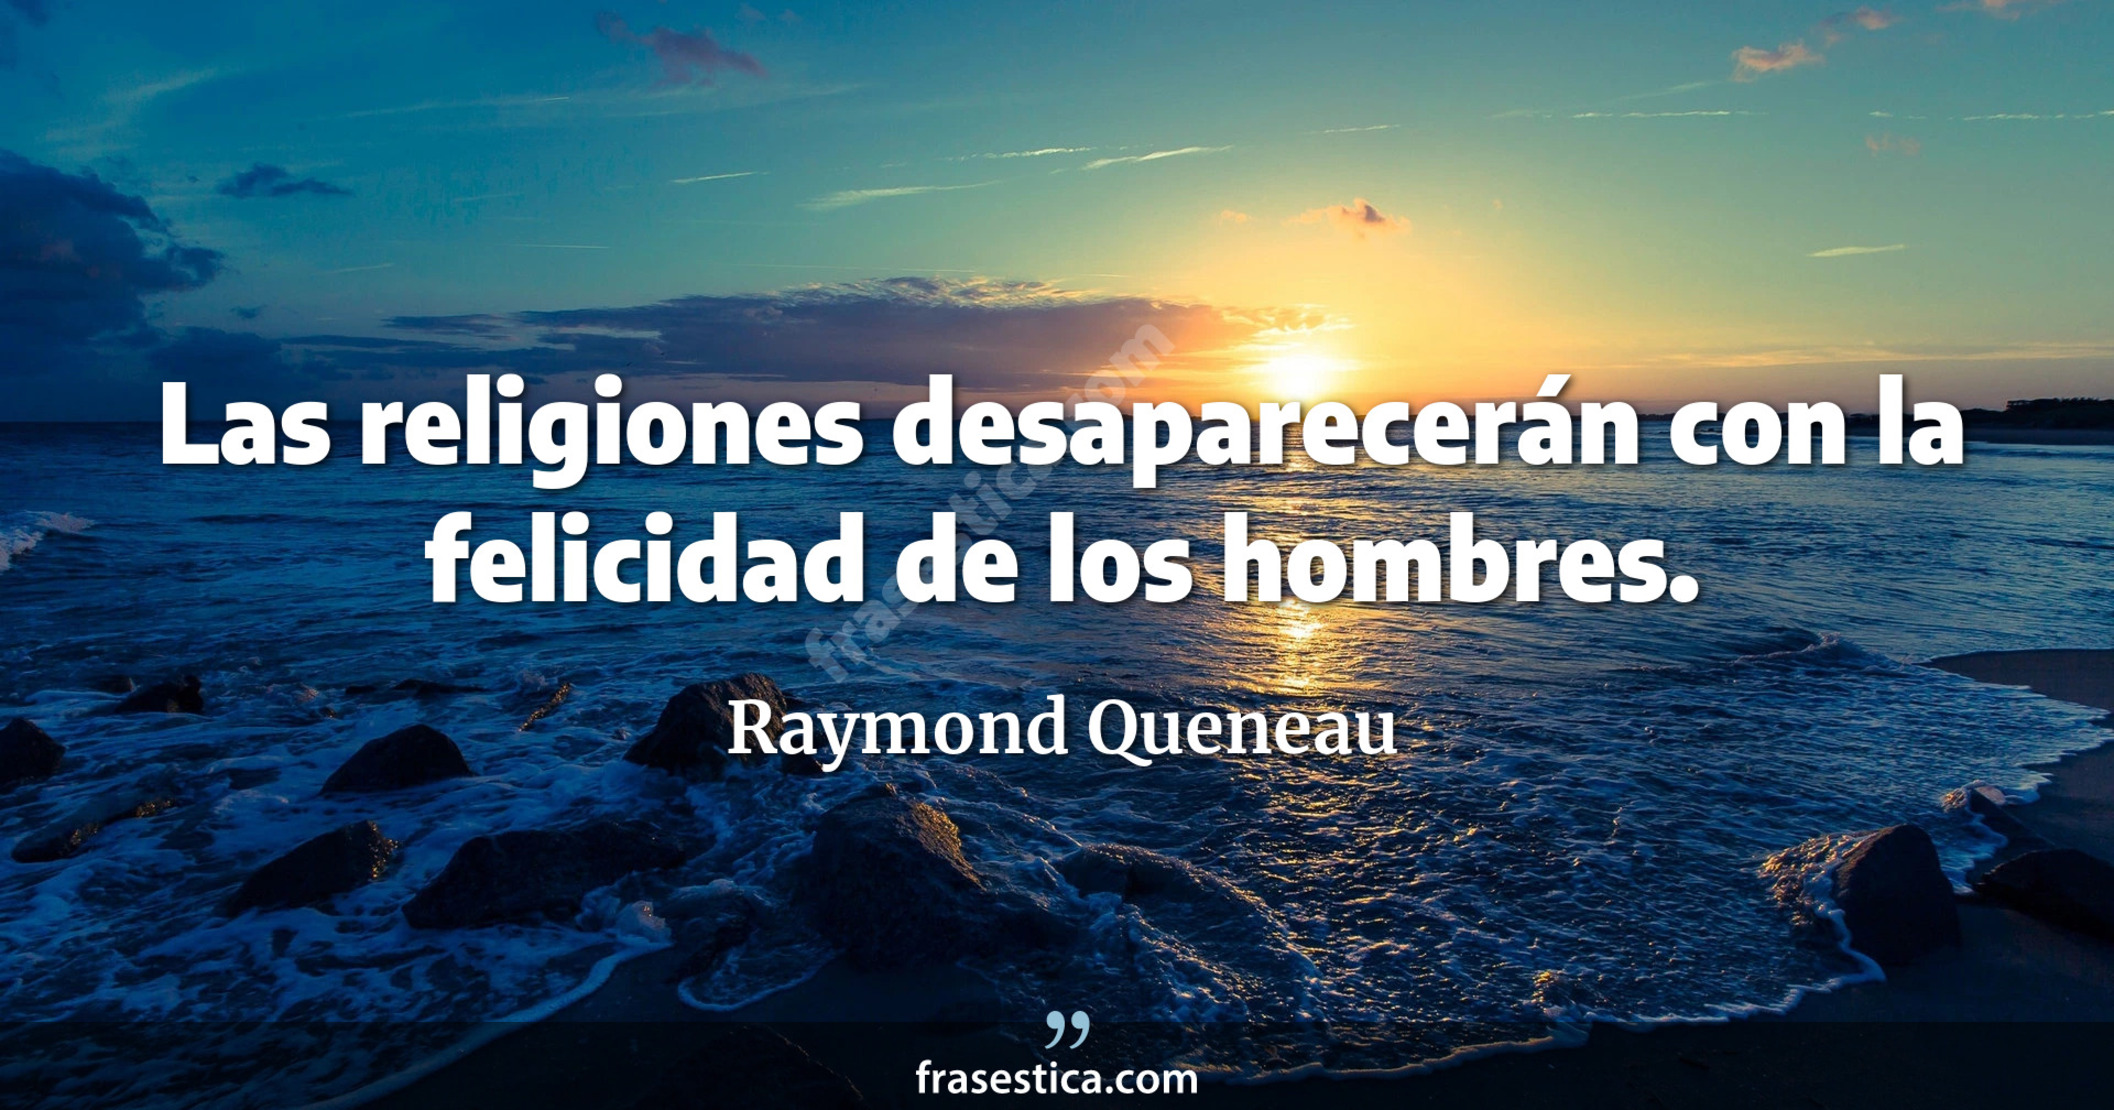 Las religiones desaparecerán con la felicidad de los hombres. - Raymond Queneau